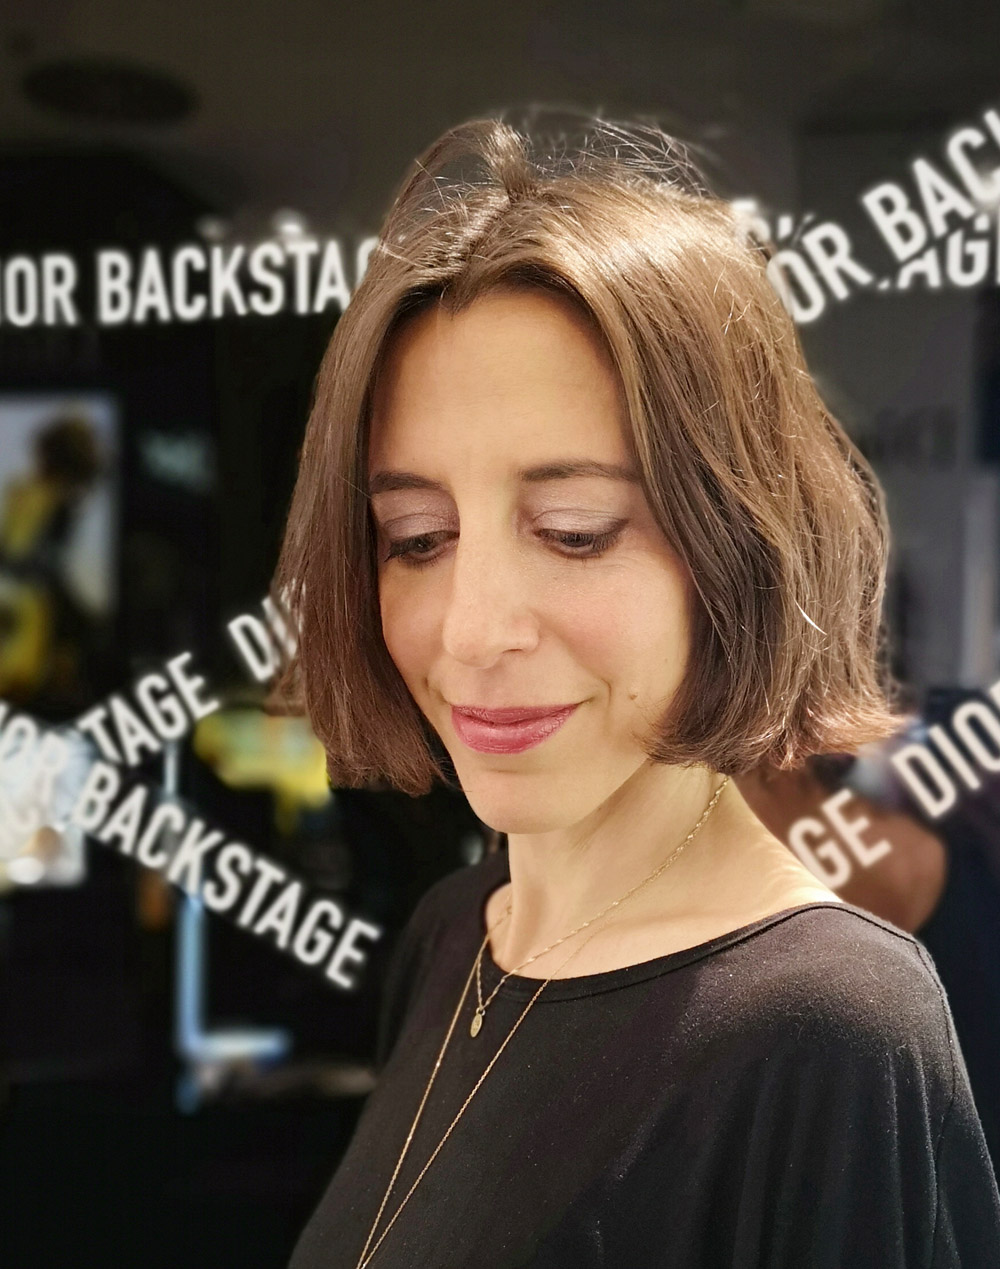 Nationals Dior Makeup Artist Michelle verrät ihre besten Schminktipps anhand der neuen Dior Backstage Kollektion.